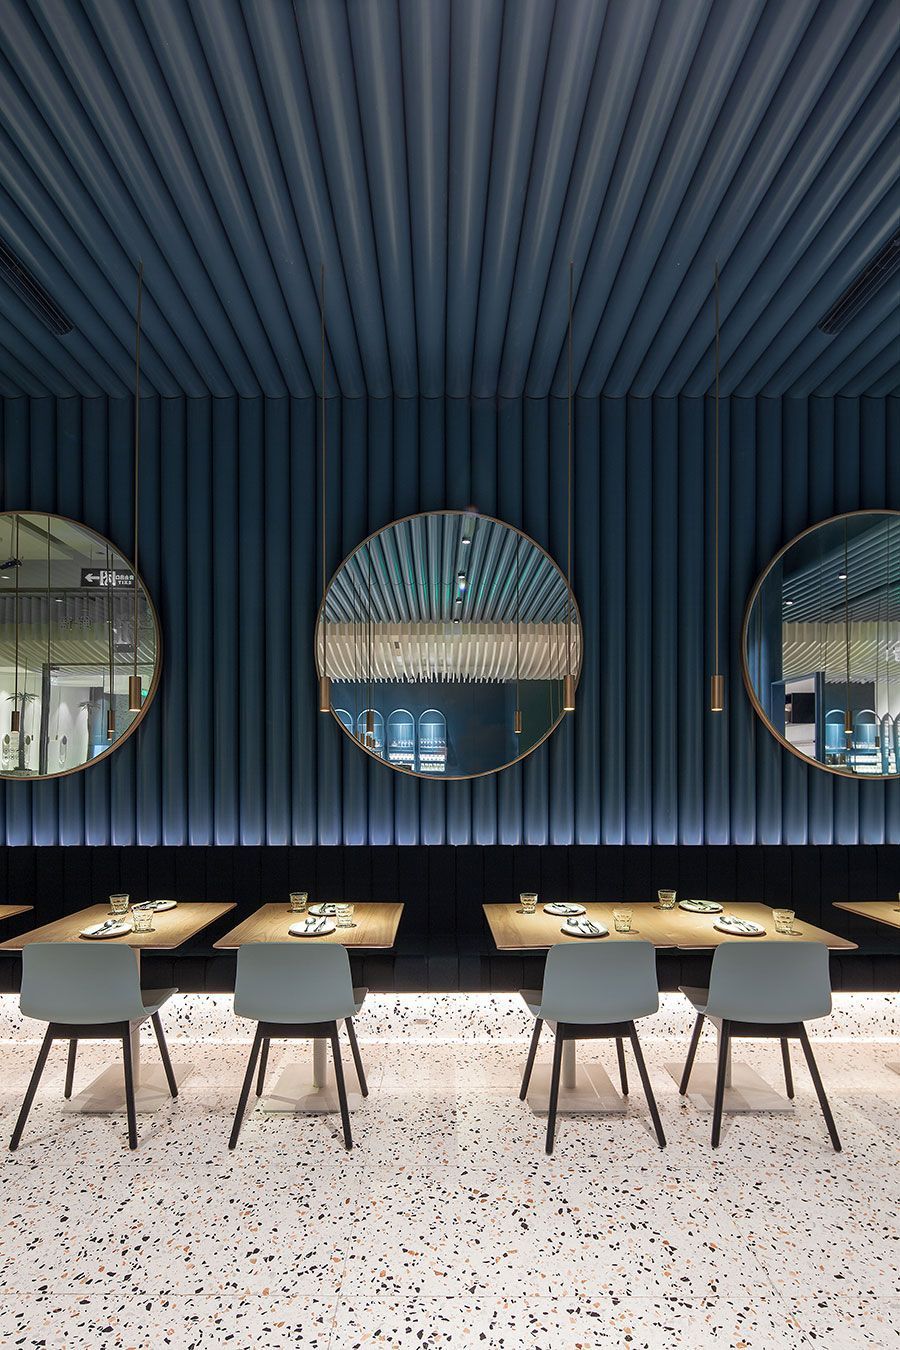 03-blue-wall-cladd-application-in-restaurant